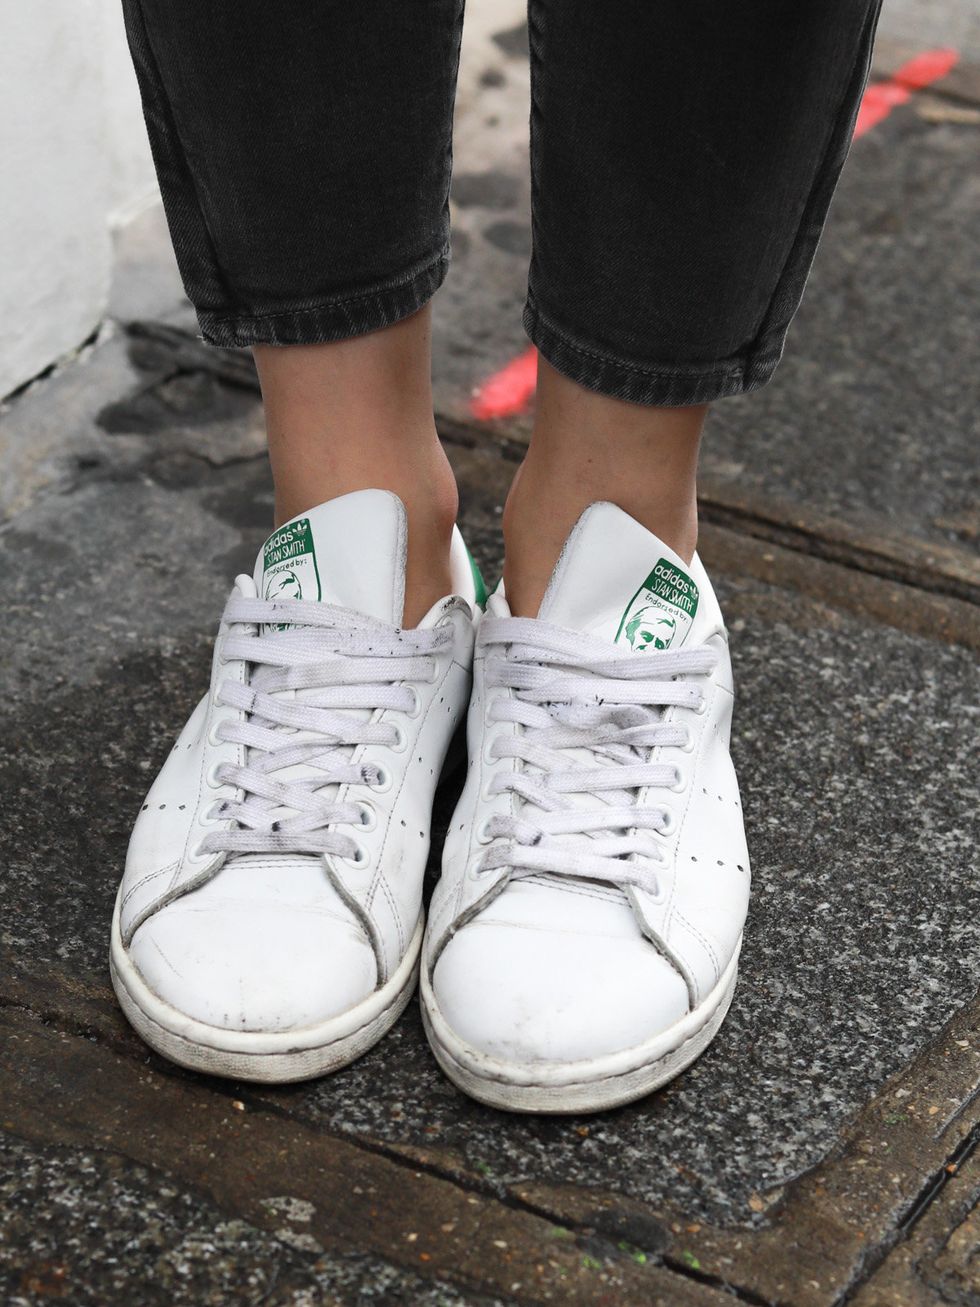 Footwear, Shoe, White, Green, Plimsoll shoe, Street fashion, Fashion, Ankle, Leg, Human leg, 